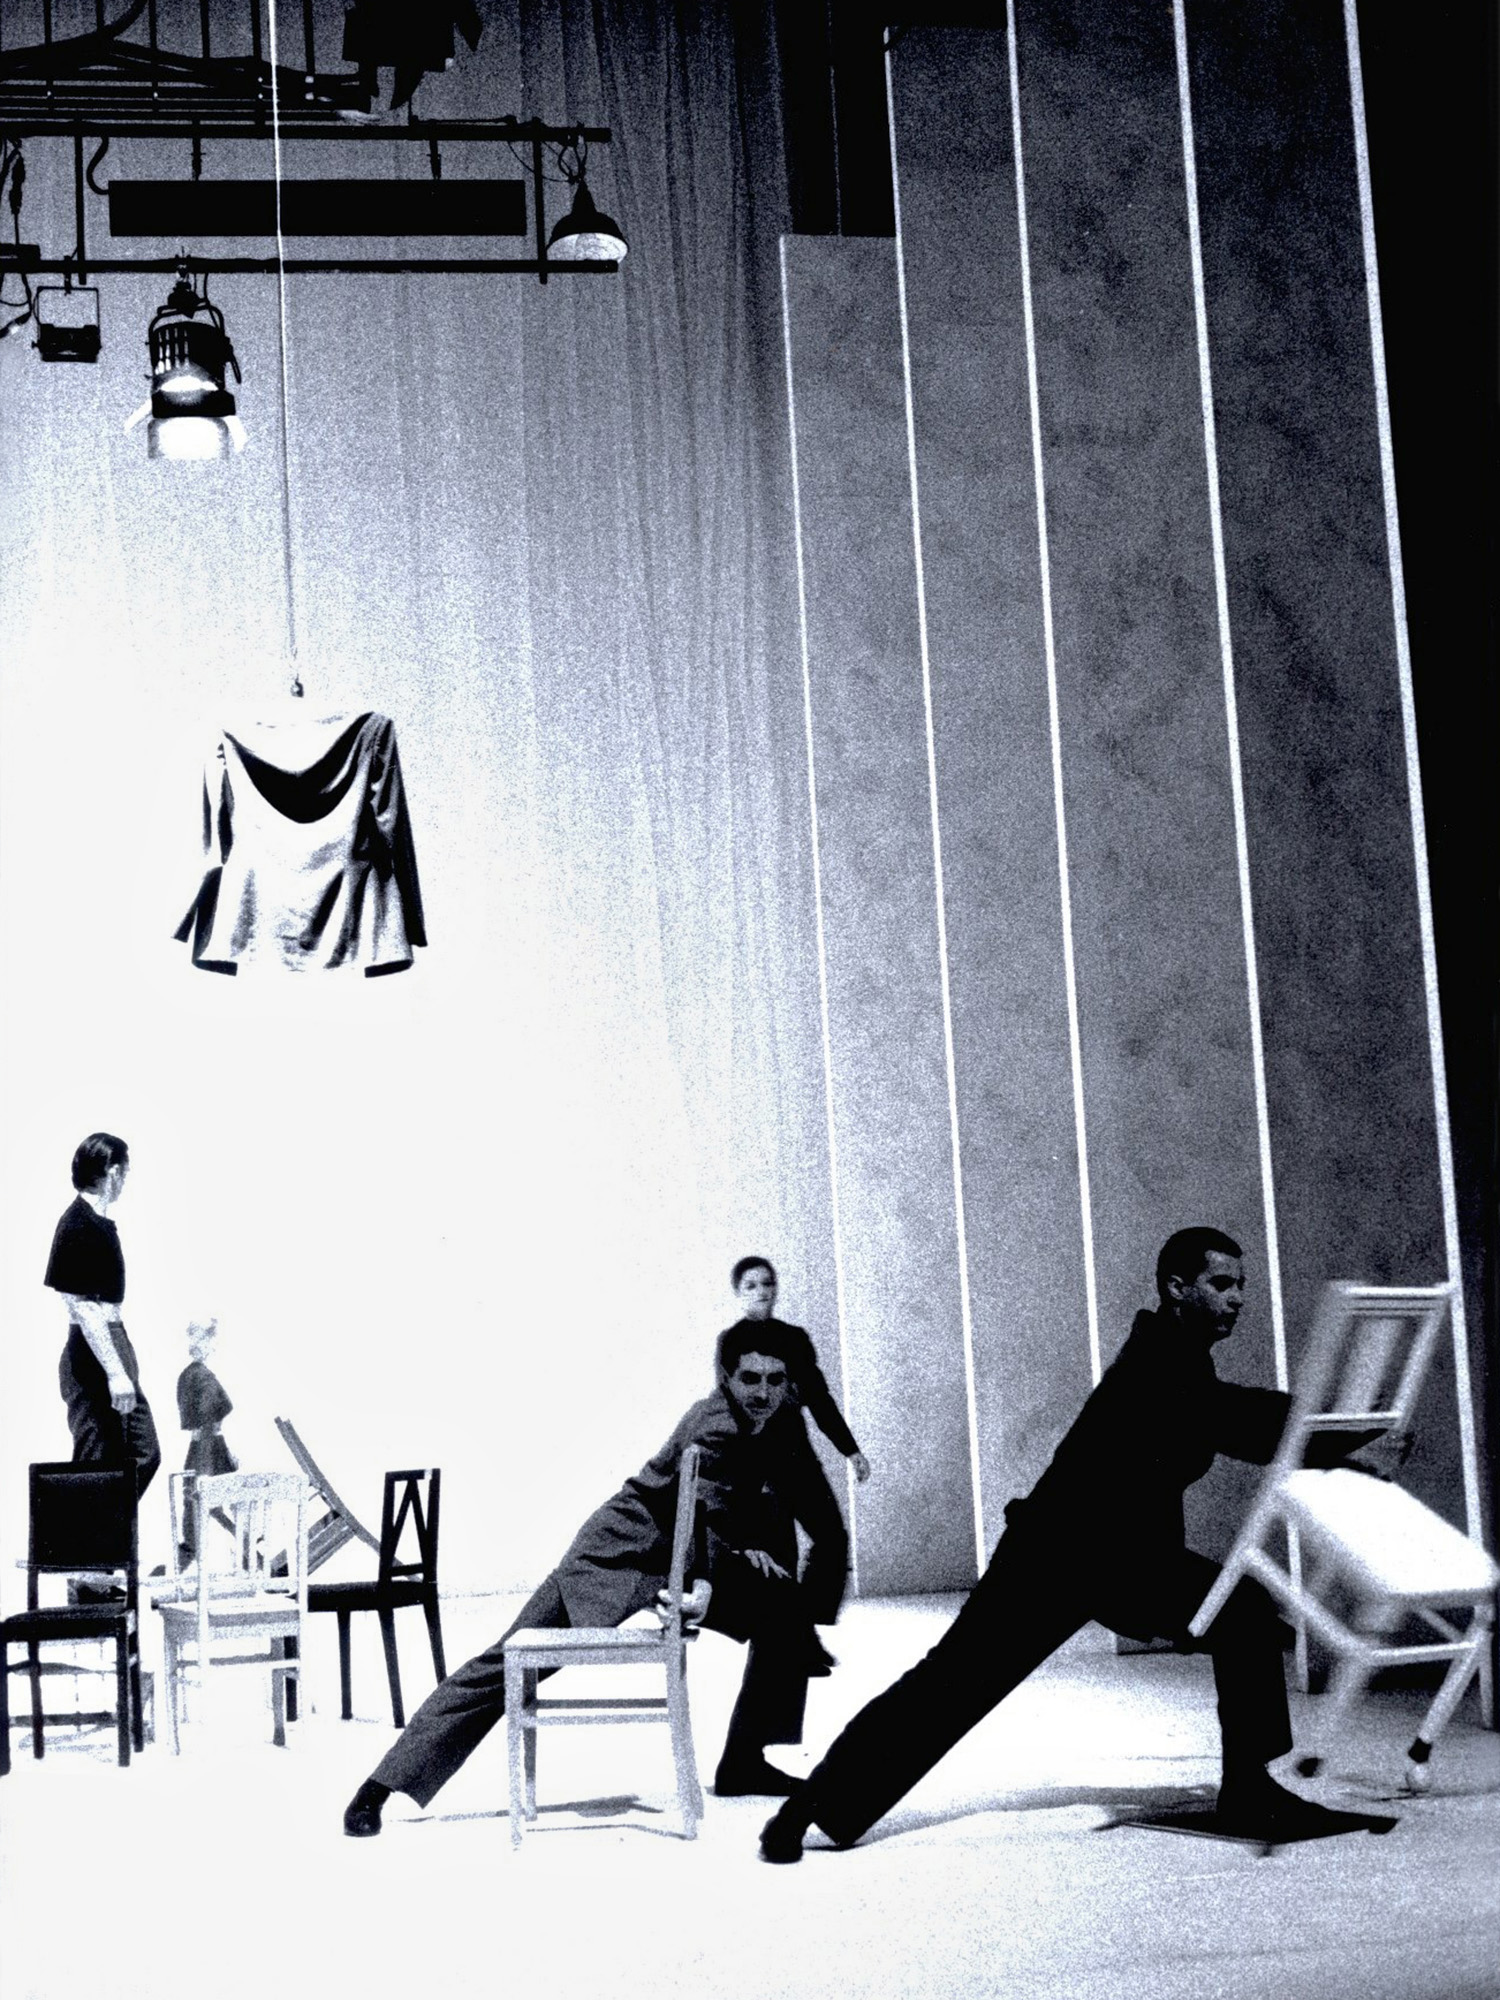 Eine Vorstellung in Kleines Haus am Staatstheater Darmstadt. Eine Ballettvorstellung, moderne Choreographie, in der Bühne von Stattstheater Darmstadt. Vorne zwei Taenzer bewegen sich mit je eine Stuhl in der Hand. Das Foto wurde 1995 aufgenommen.